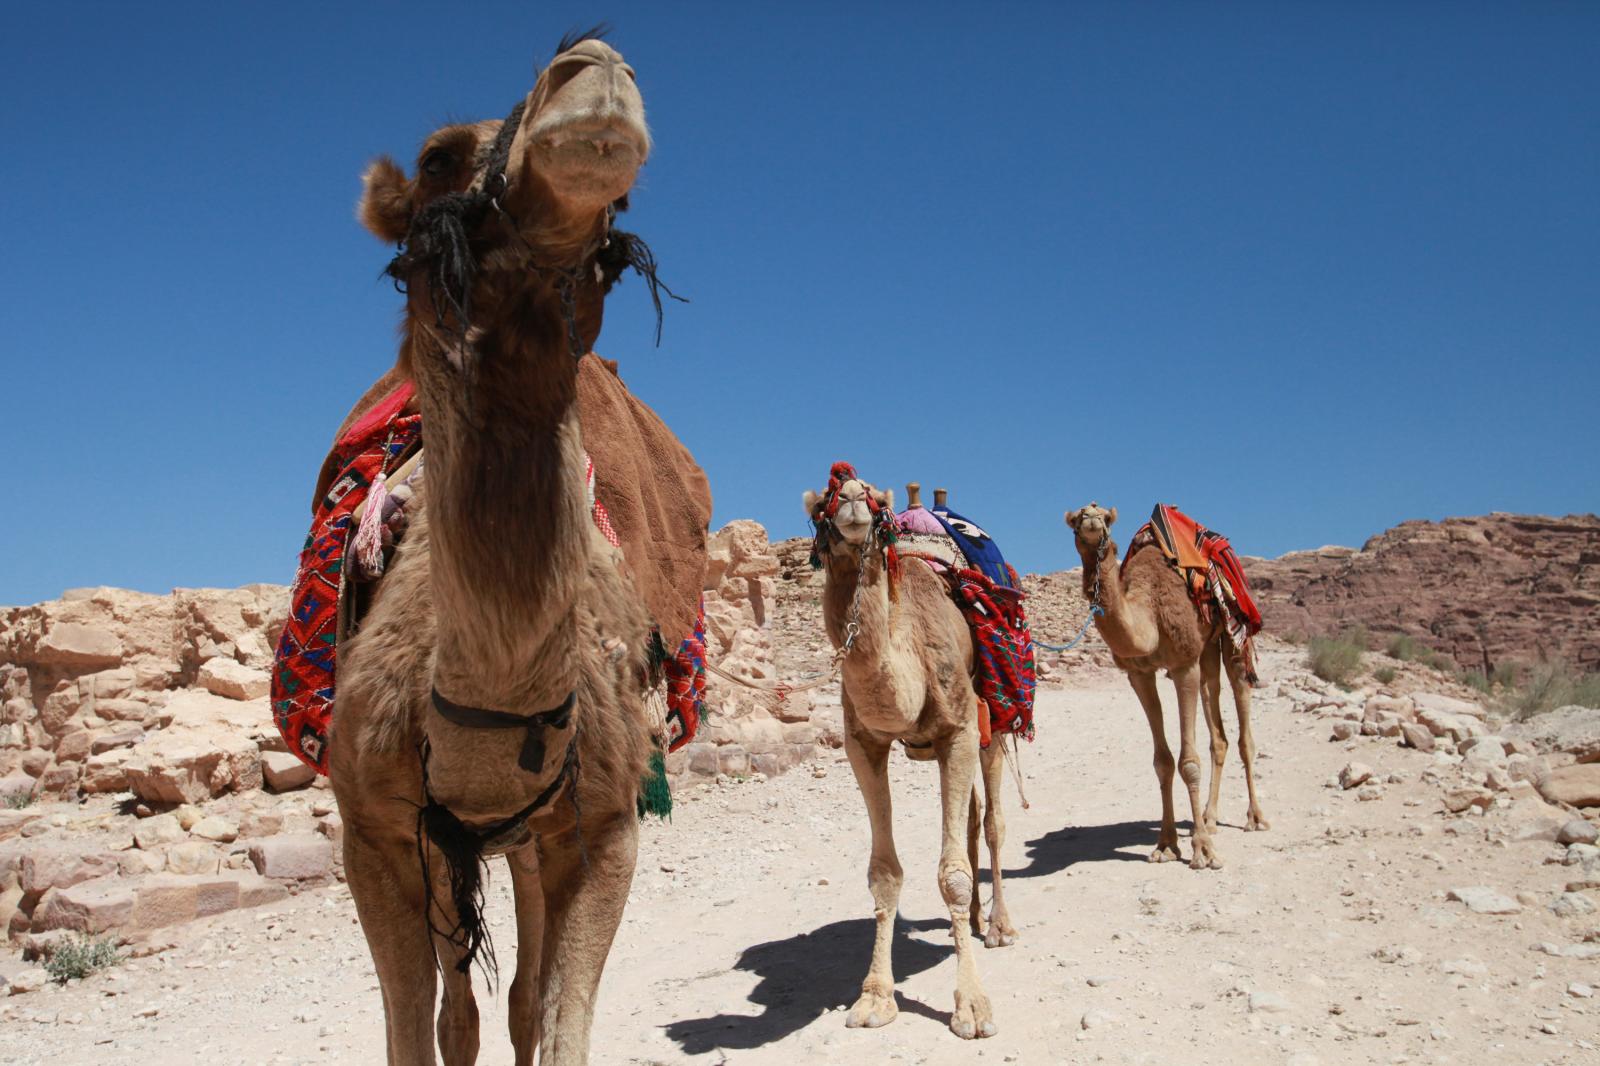 Camels in Petra, Jordan | Buy this image